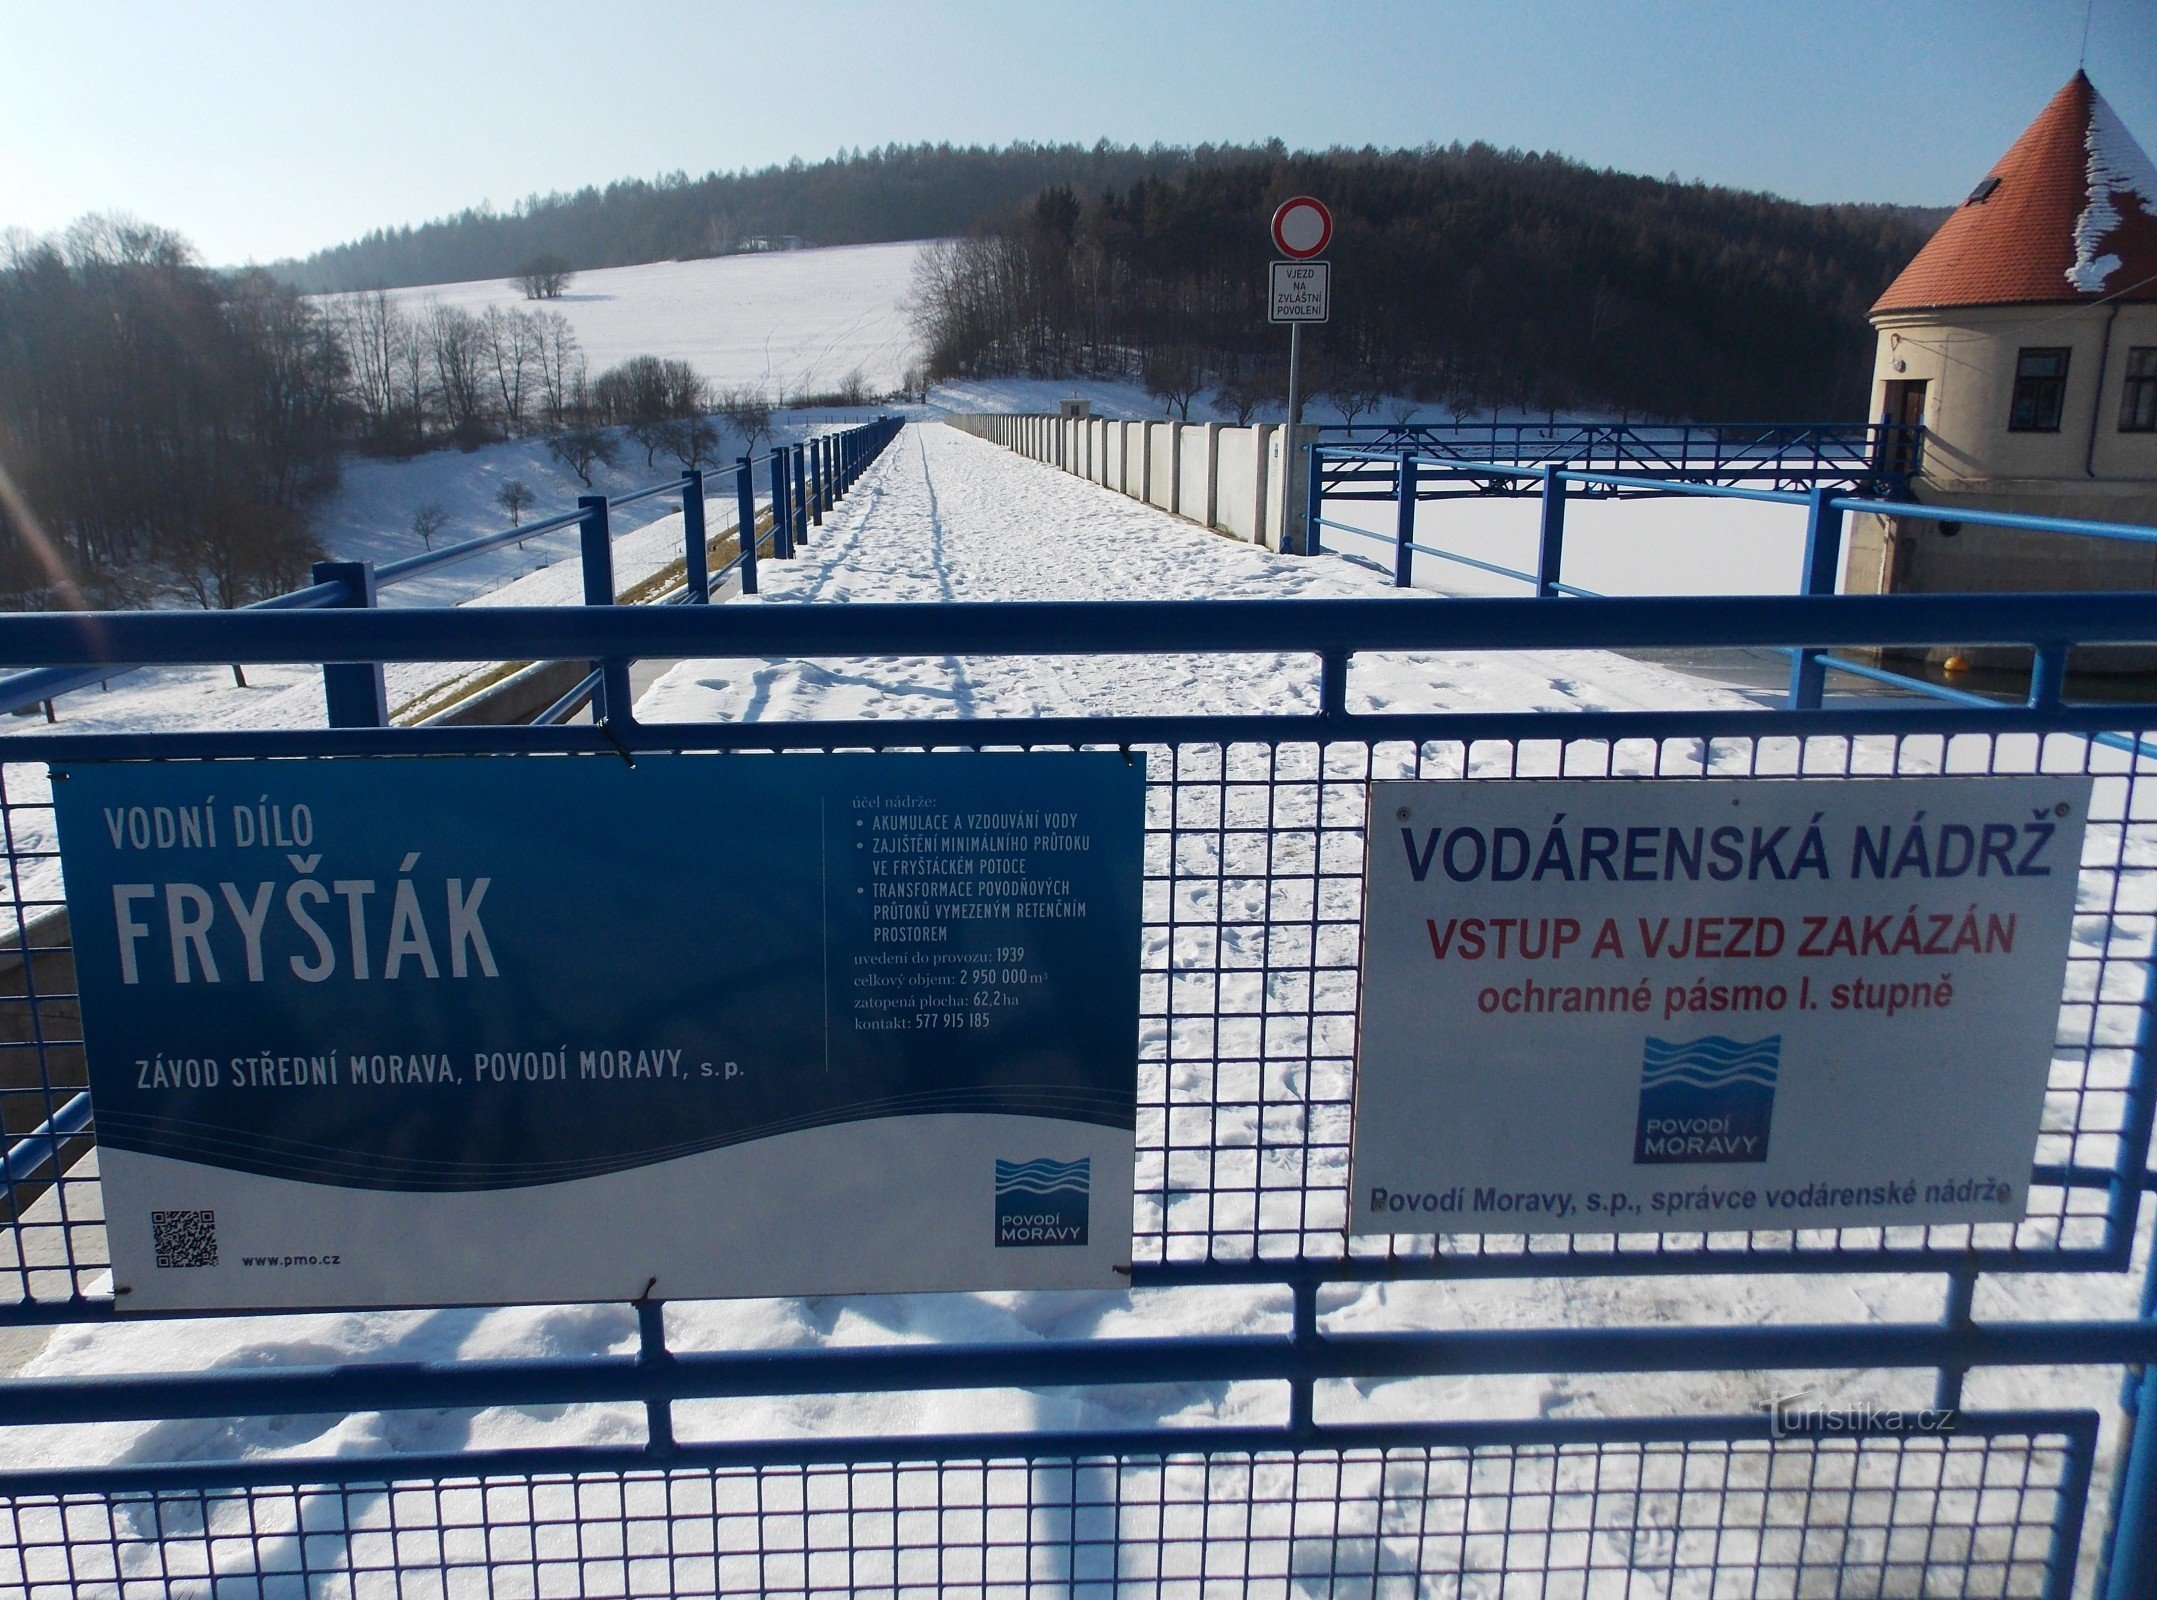 Ausflug entlang des Stausees in Fryšták und Spaziergang in Kostelec bei Zlín